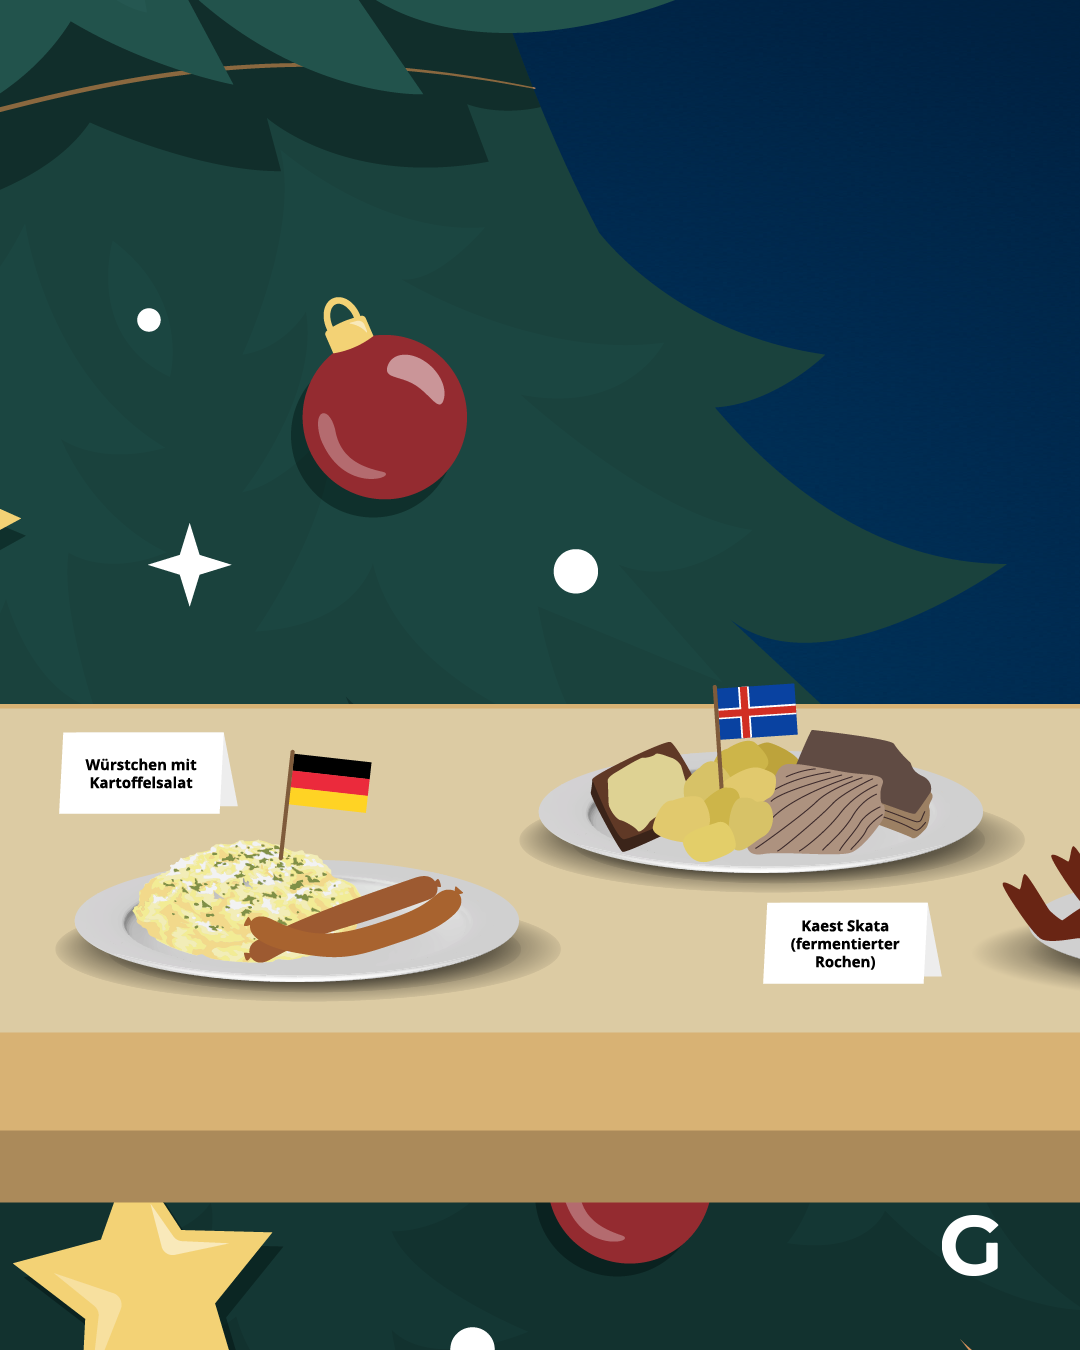 In Deutschland führen Würstchen mit Kartoffelsalat das Ranking der beliebtesten Weihnachts-Gerichte an. In Island kommt traditionell am 23. Dezember Kaest Skata,&nbsp;fermentierte Rochenflügel, auf den Tisch.&nbsp;